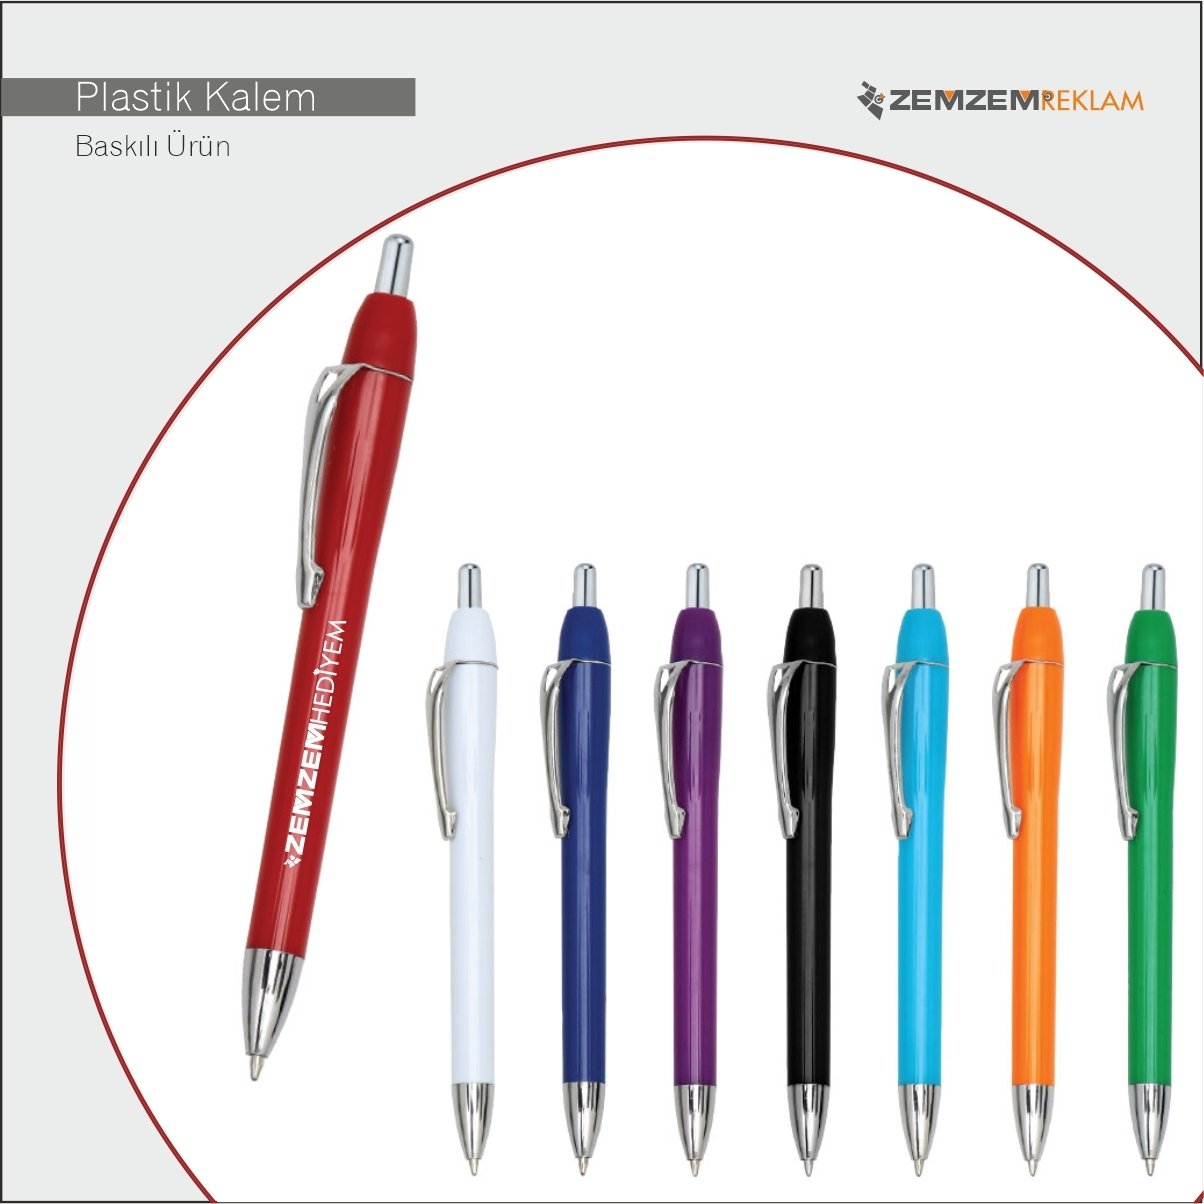 Baskılı Firmaya Özel Plastik Kalem